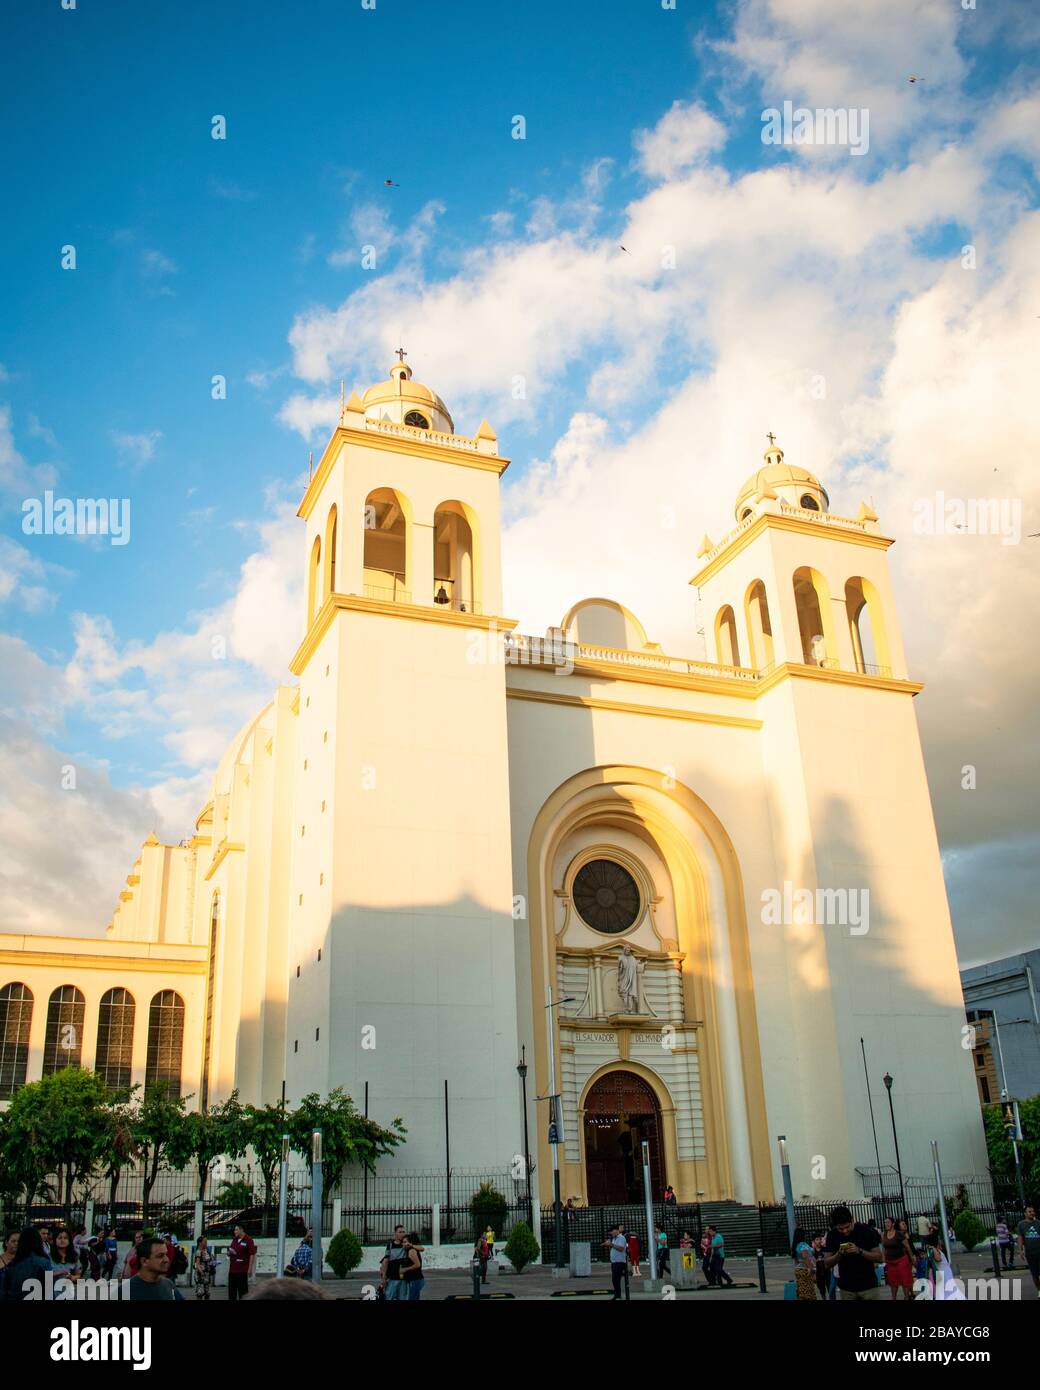 Cathedral of San Salvador in El Salvador Stock Photo